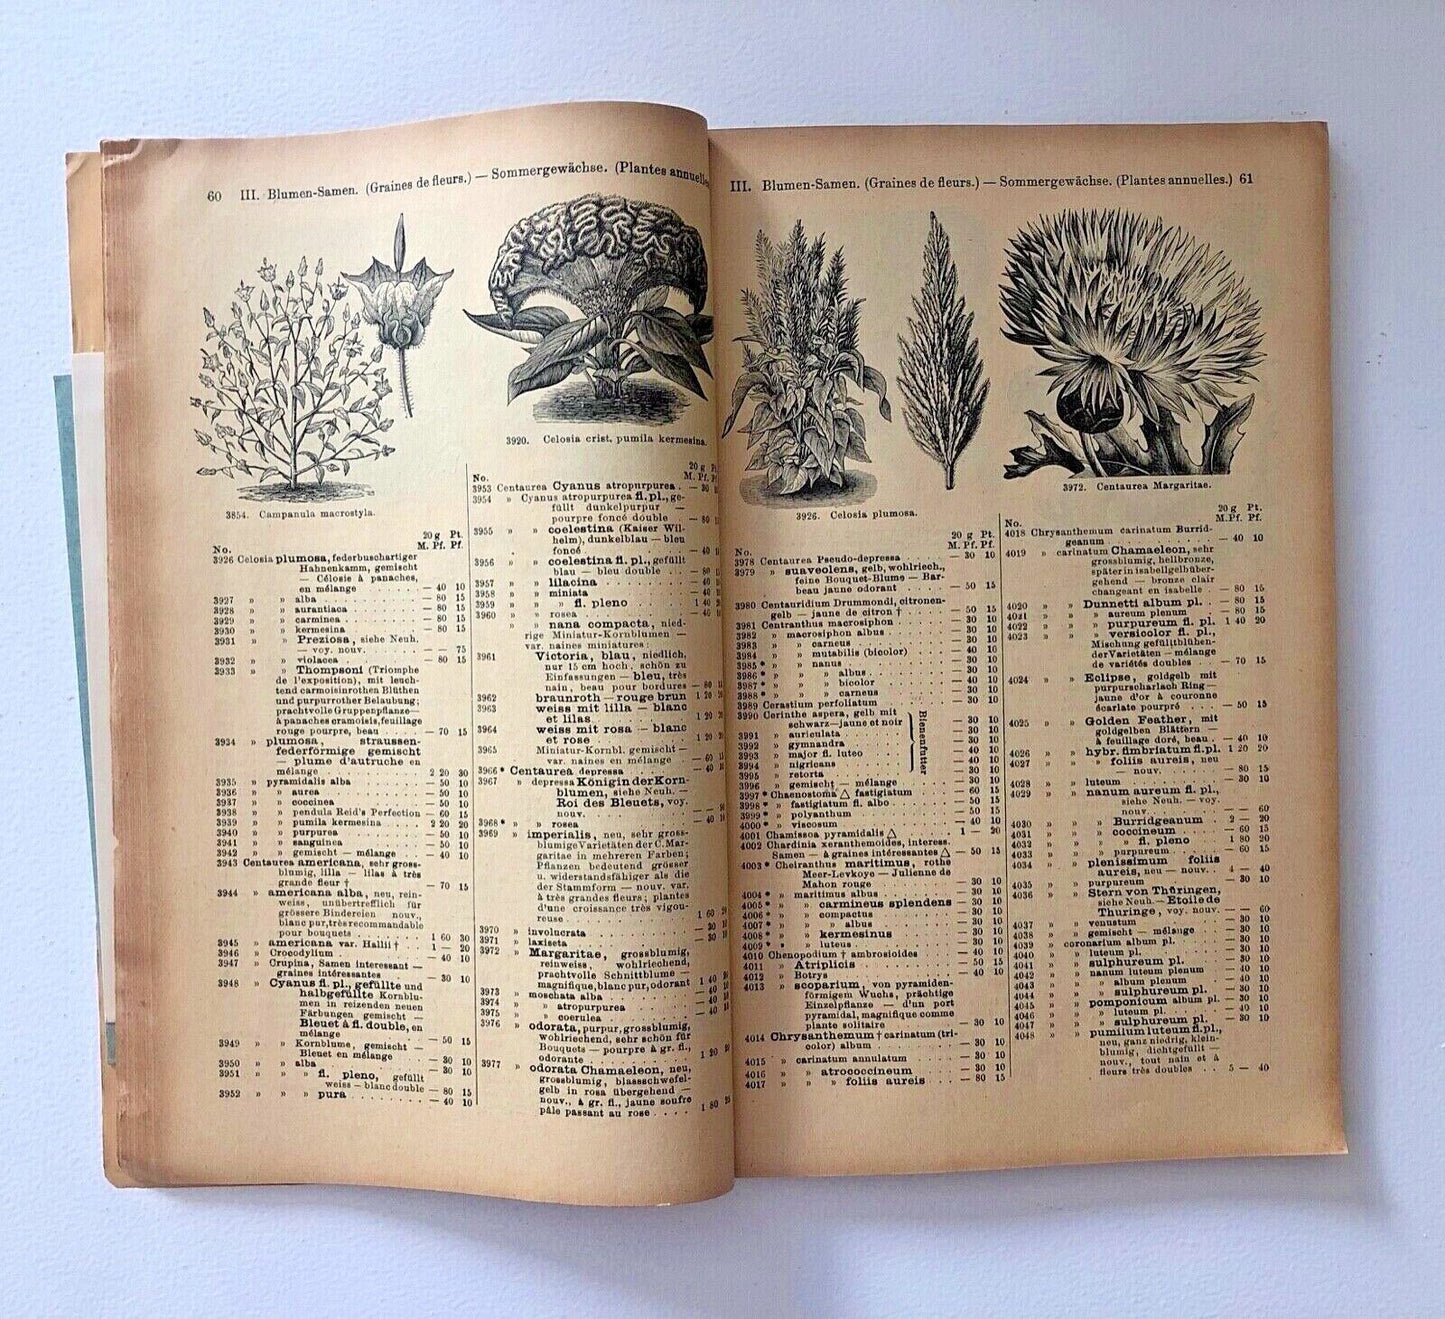 Haage & Schmidt 1901 Haupt-Verzeichniss Samen und Pflanzen